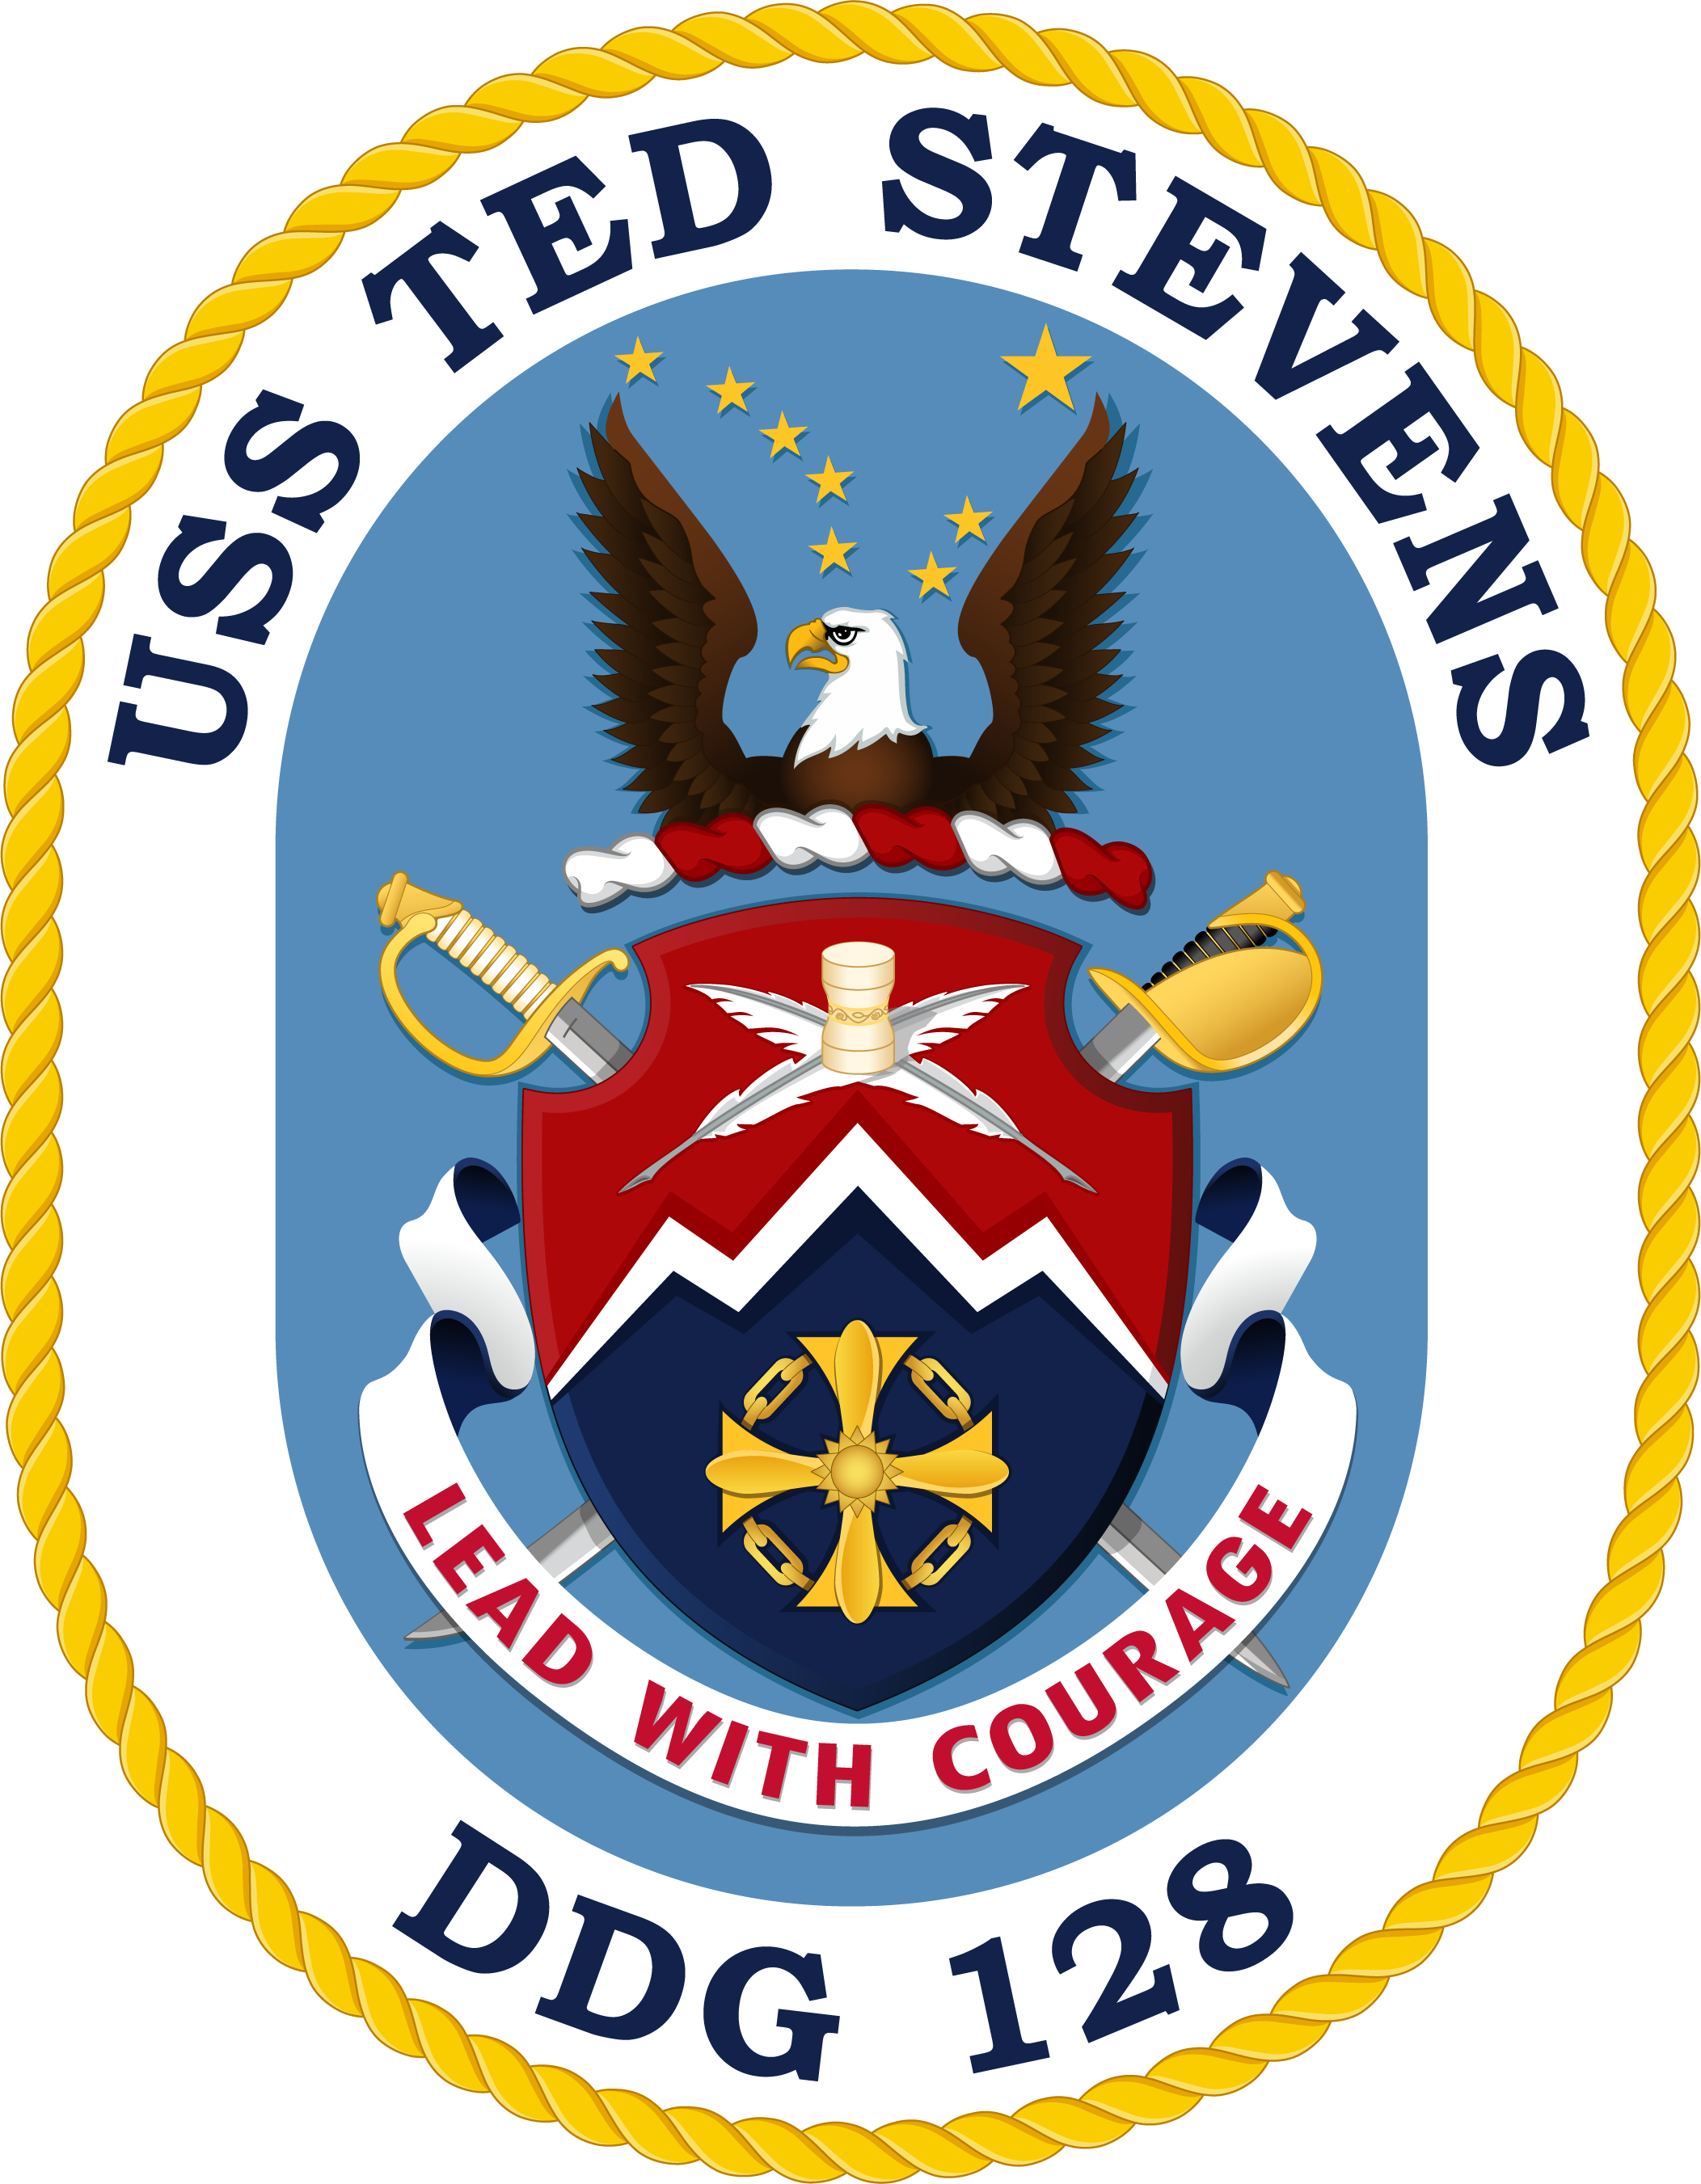 uss anchorage crest